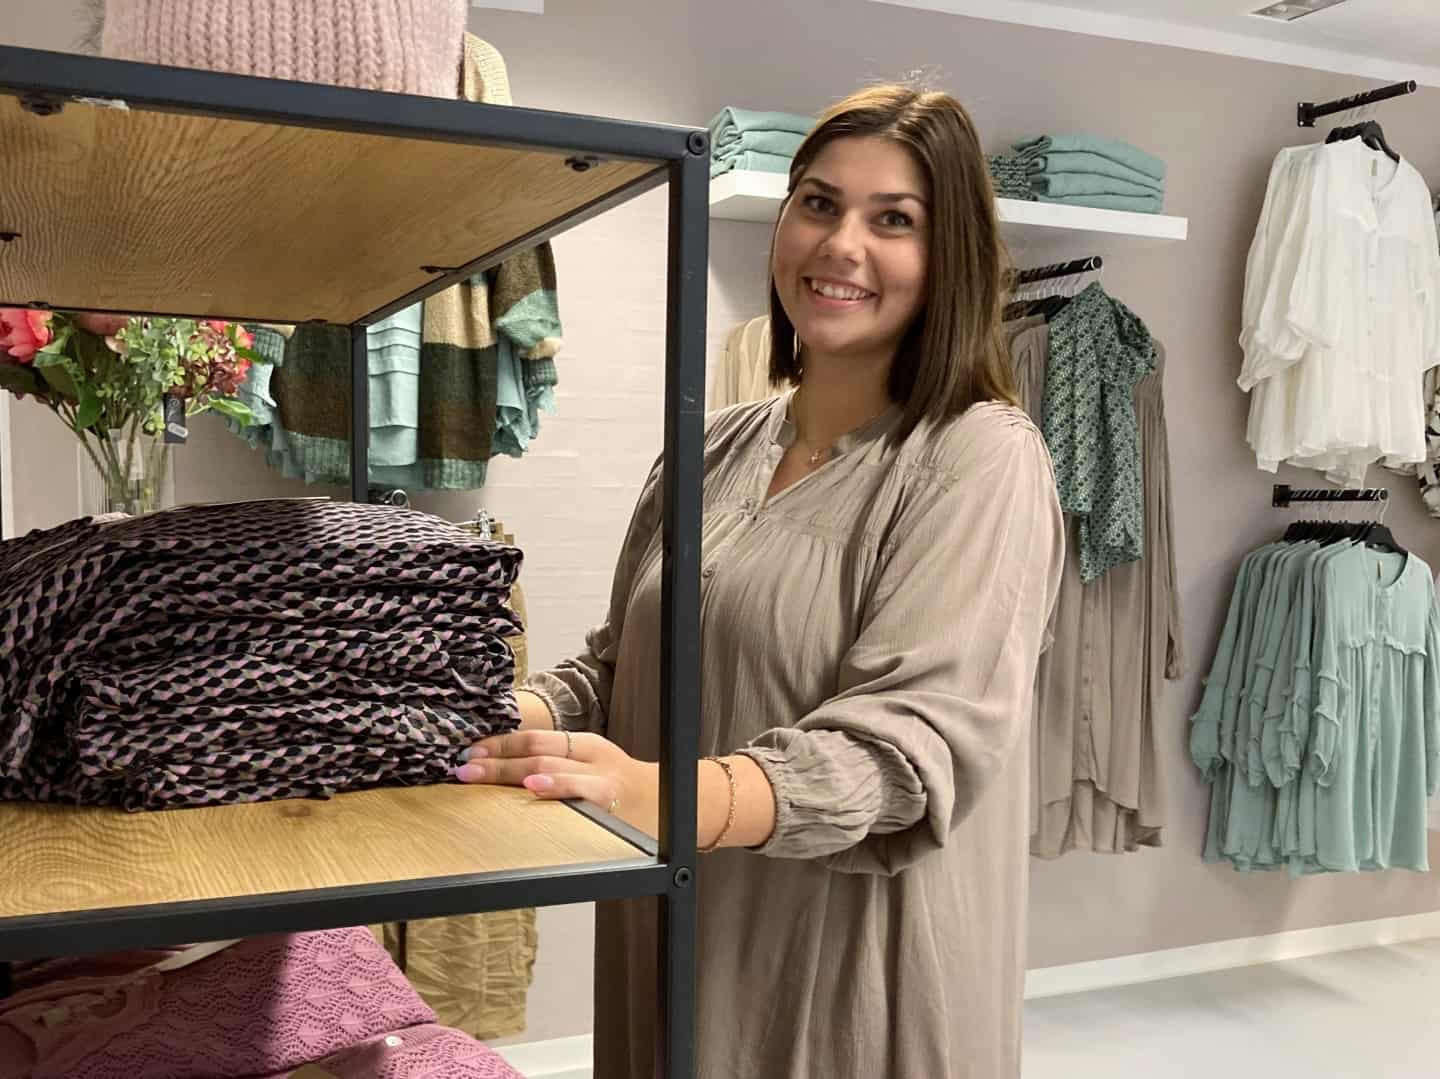 Kvinder hele ser med, Louise sælger tøj på Facebook: Nu udvider hun med en butik i Esbjerg | jv.dk